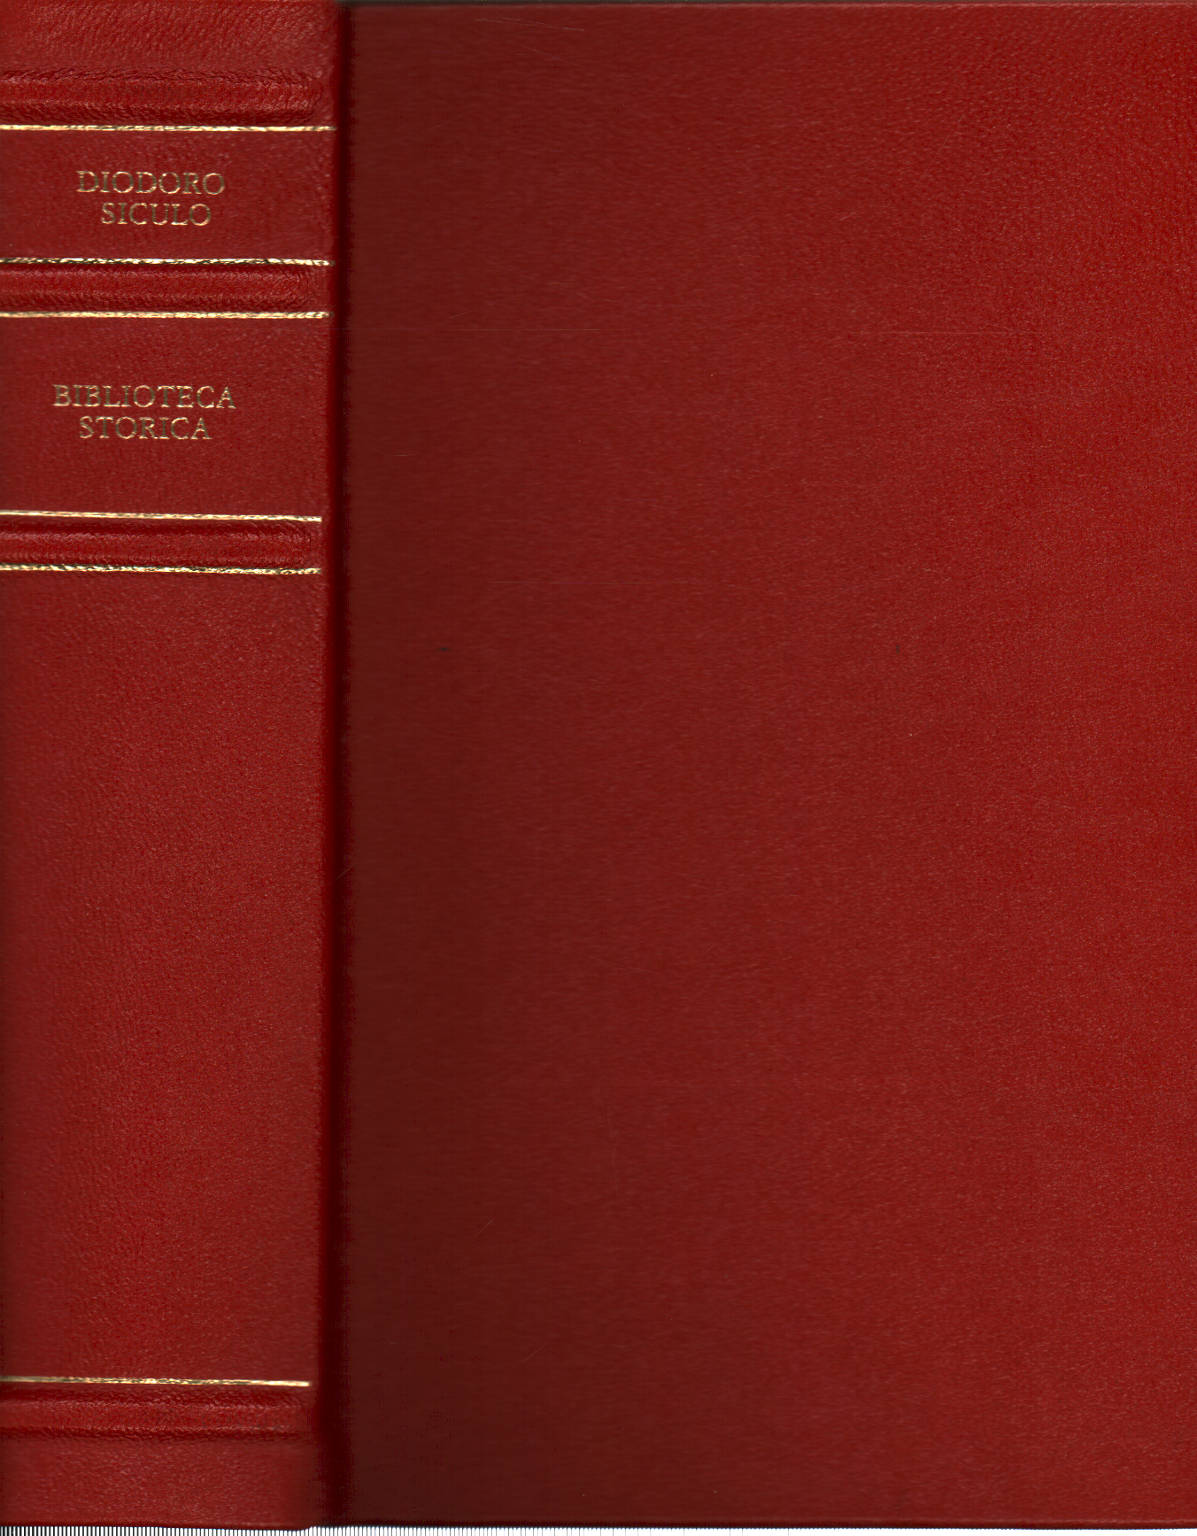 Biblioteca histórica. Libros XIV-XVII